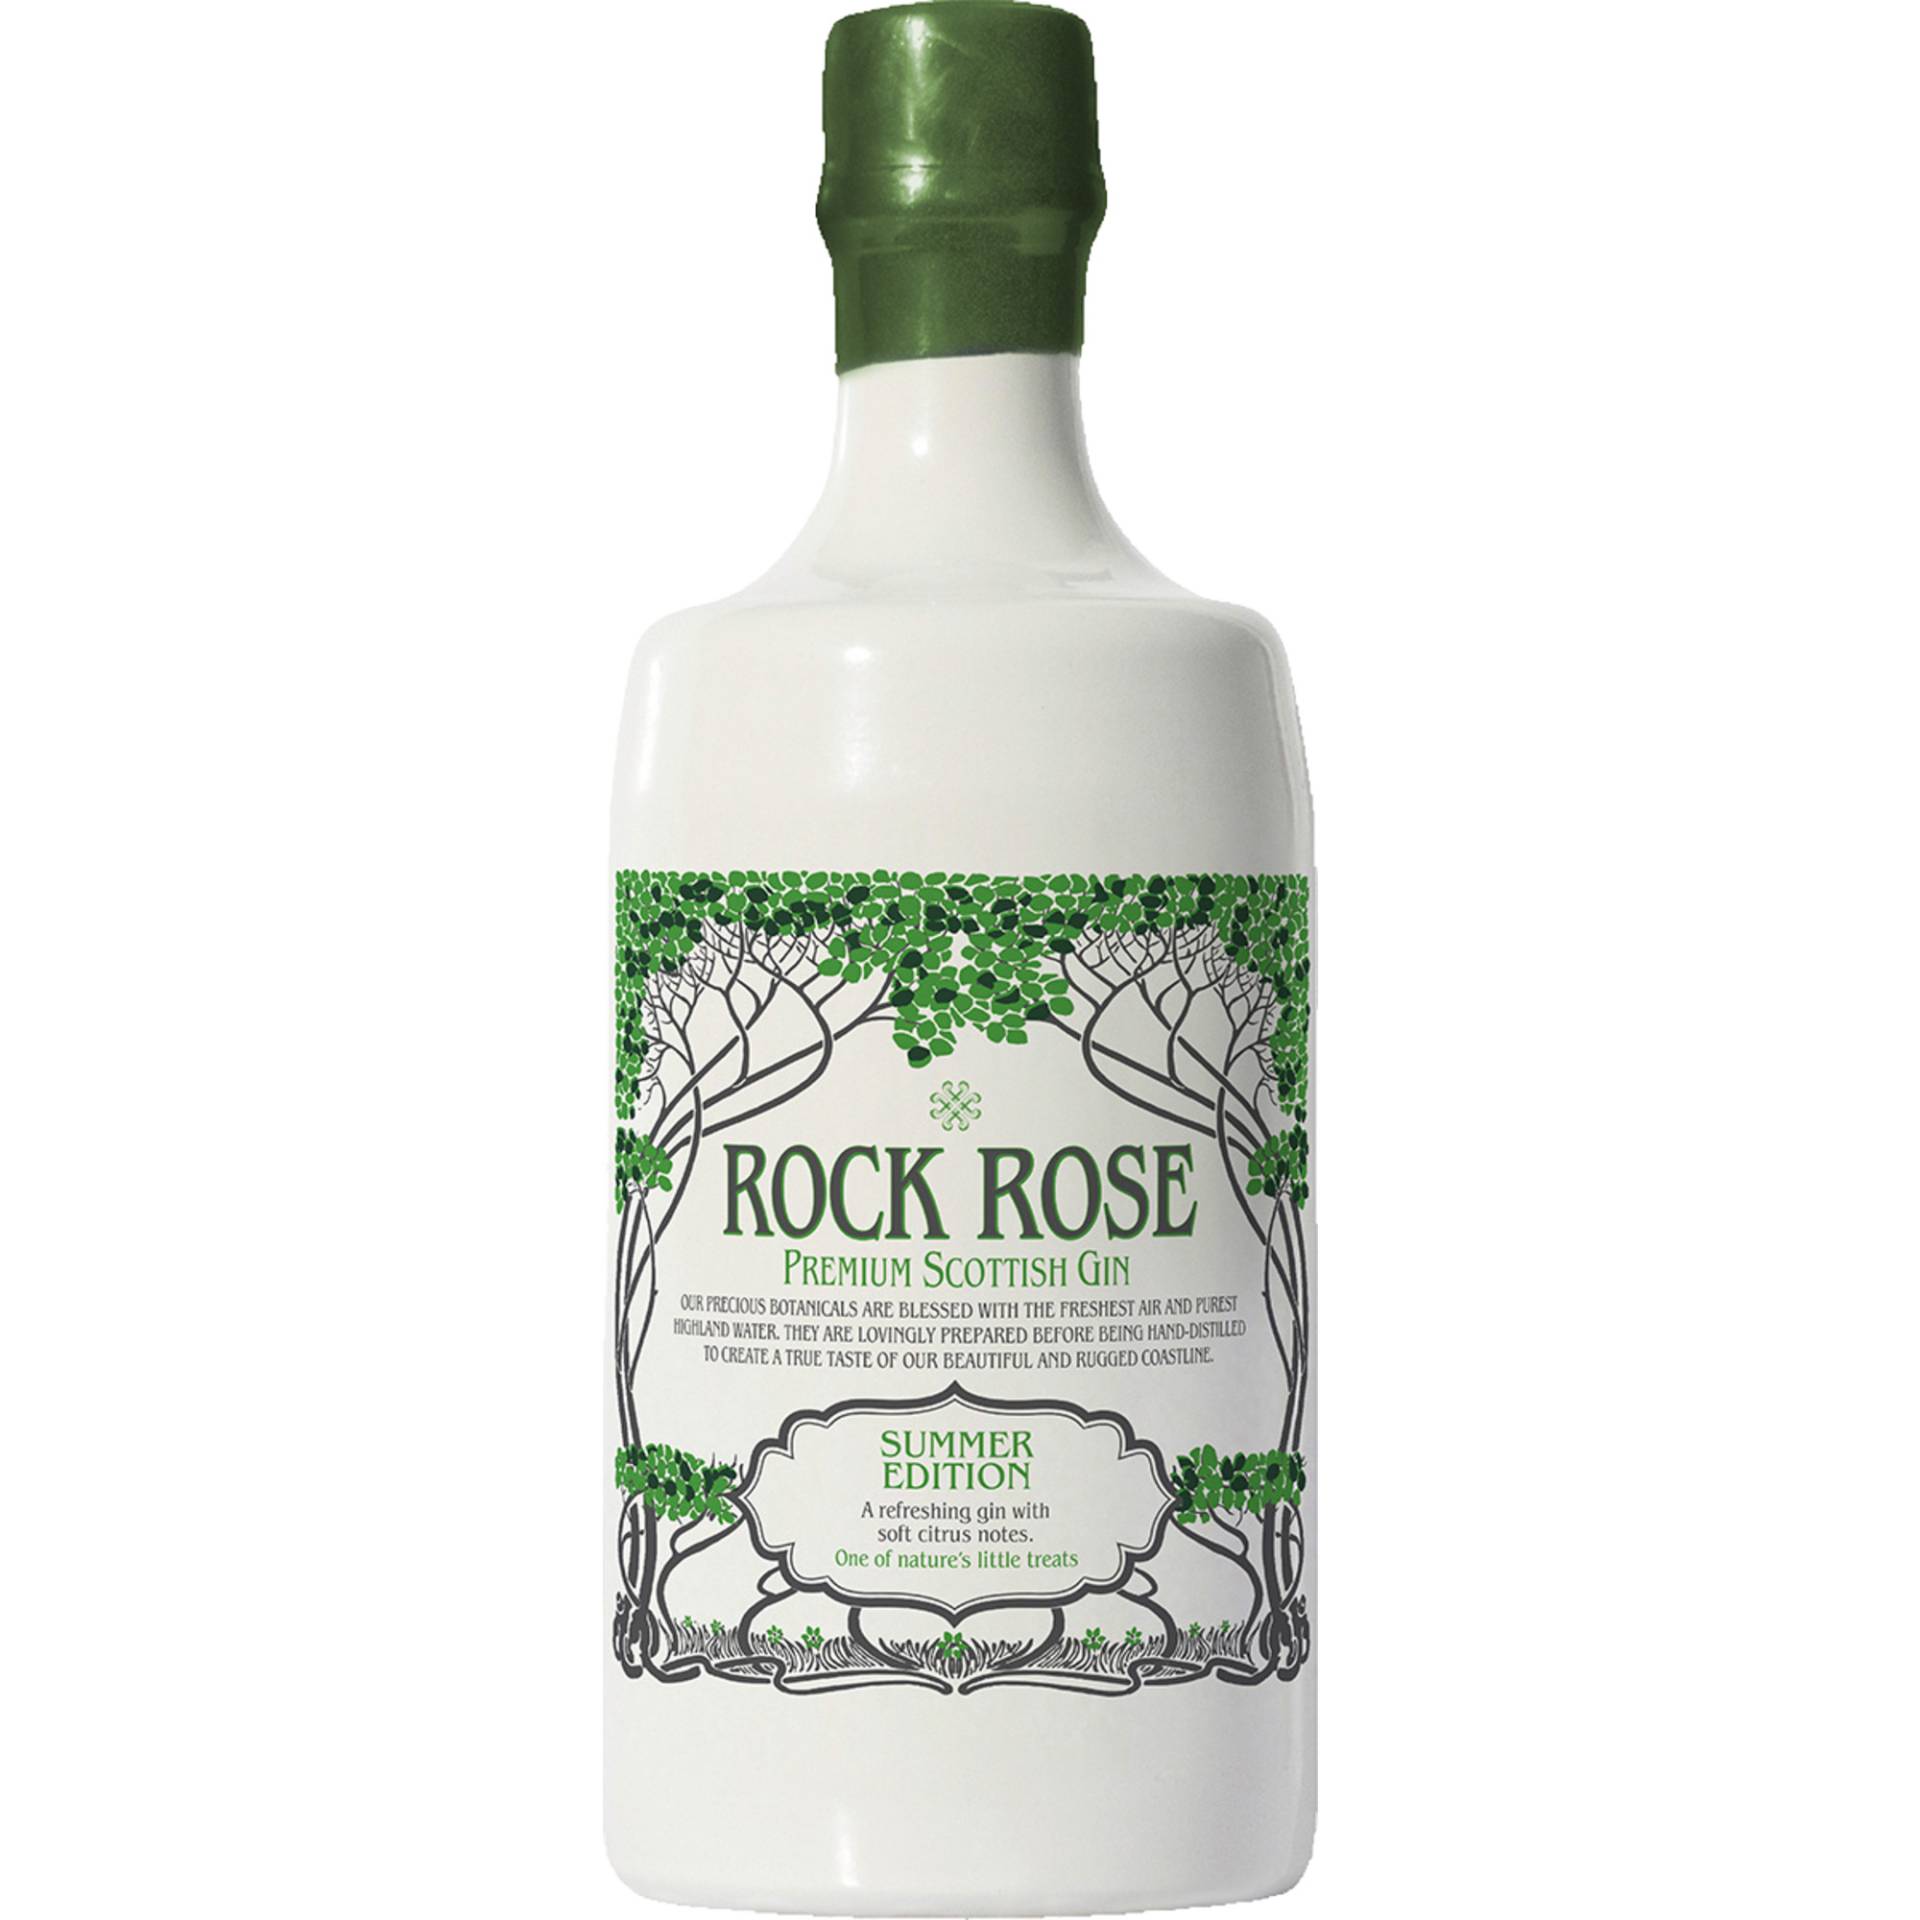 Rock Rose Premium Scottish Gin, Summer Edition, 41,5%, 0,7 L, Schottland, Spirituosen von Dunnet Bay Distillers Ltd. ,   GB KW14 8YD Thurso